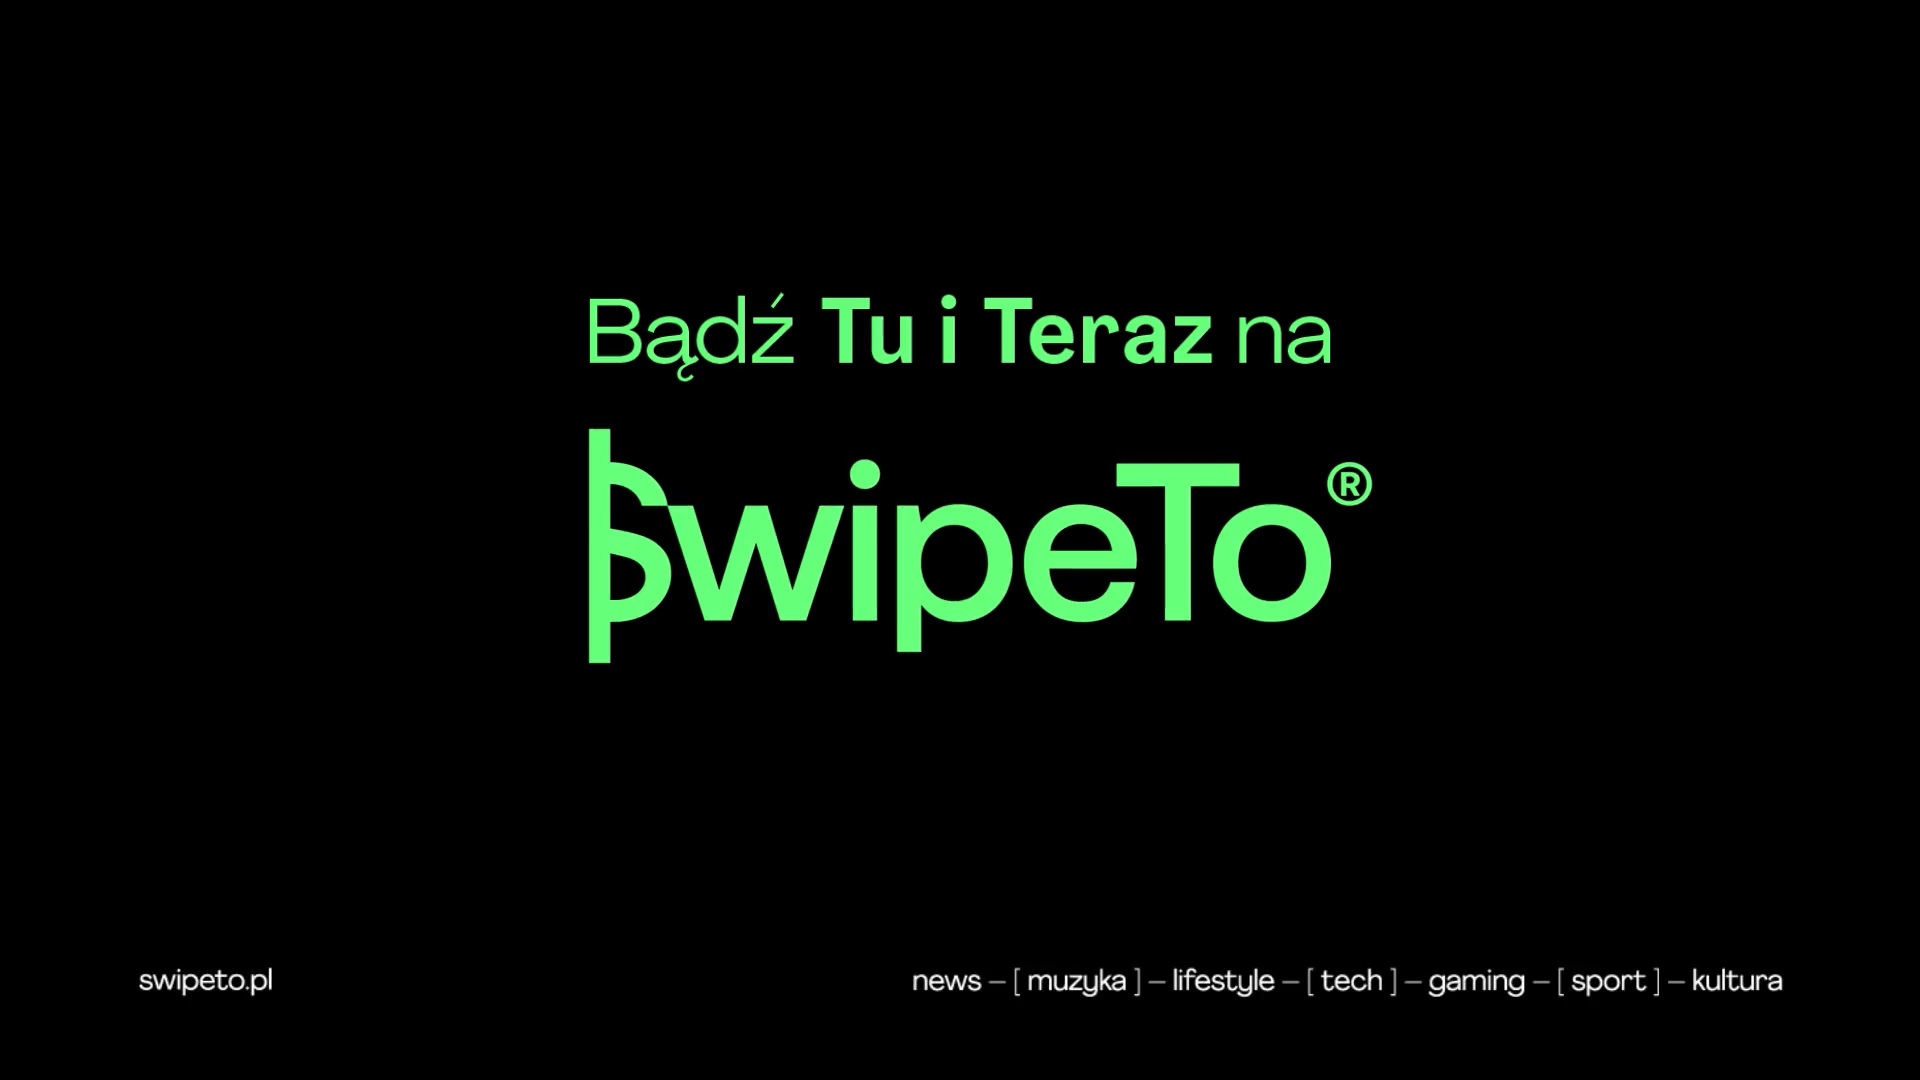 TVP SwipeTo